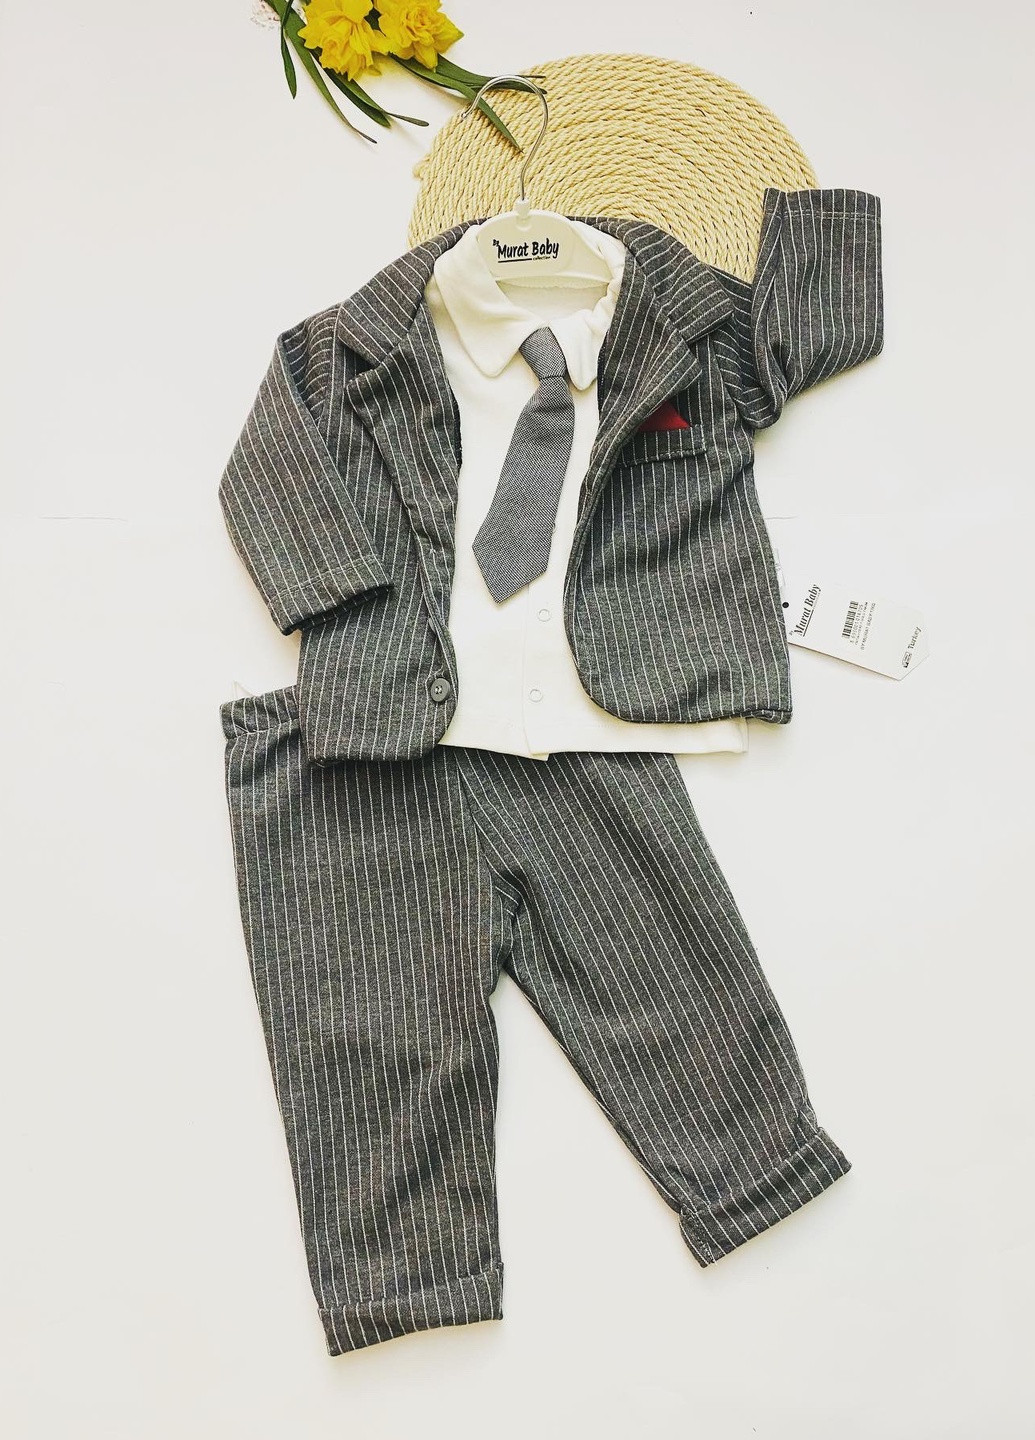 Сірий костюм-трійка для хлопчиків із краваткою, сірий 9-18-24 місяців Murat baby